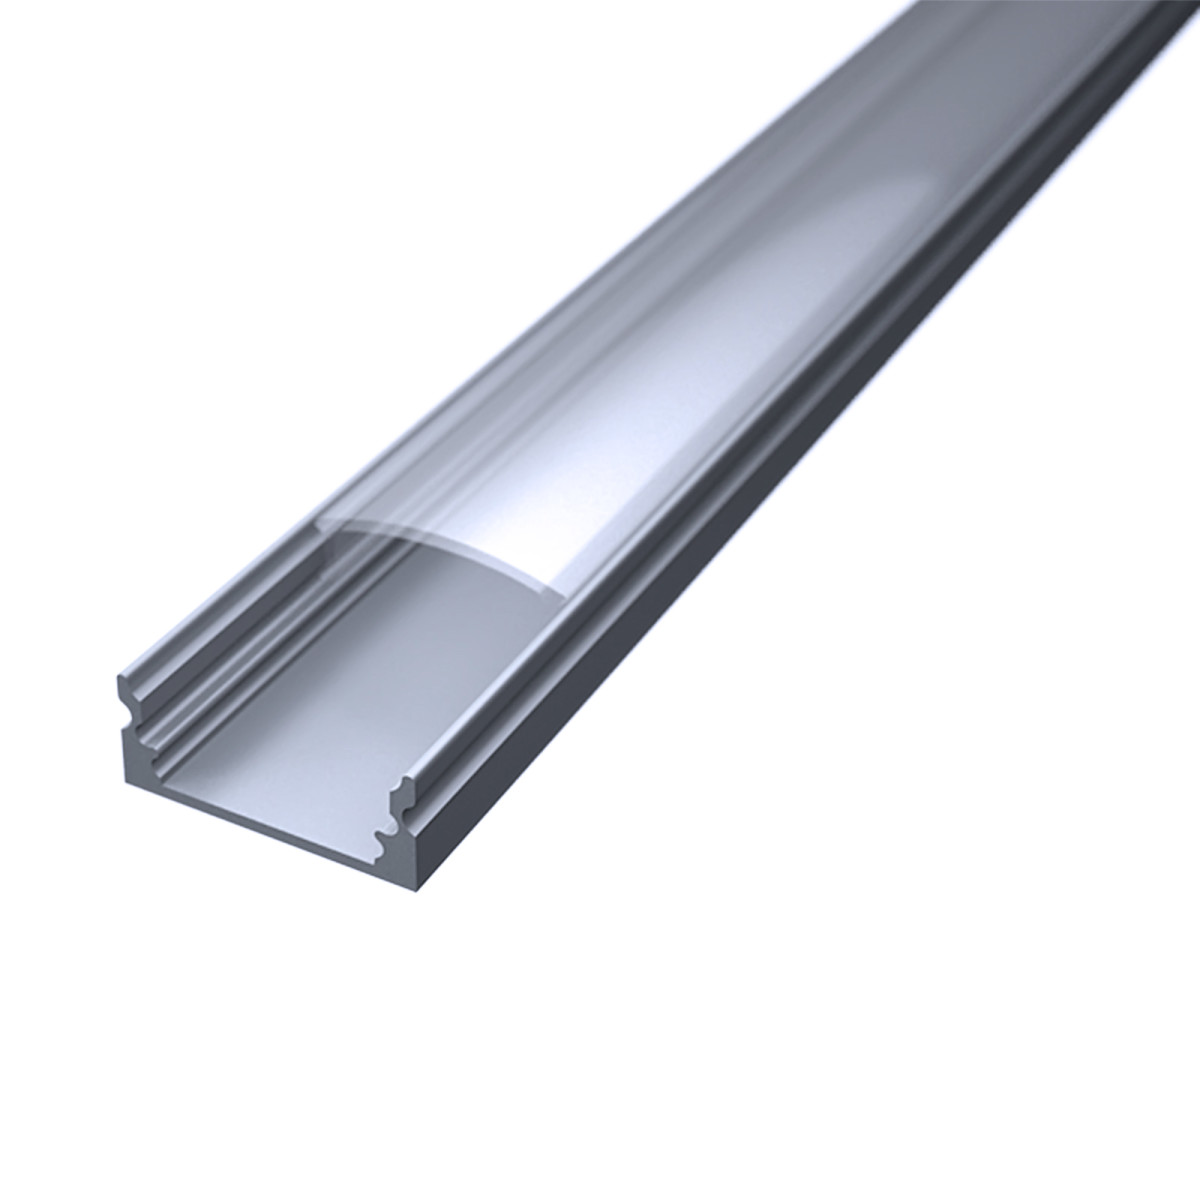 LED Flachprofil "Slim-Line" | Abdeckung transparent | Zuschnitt auf 98cm |